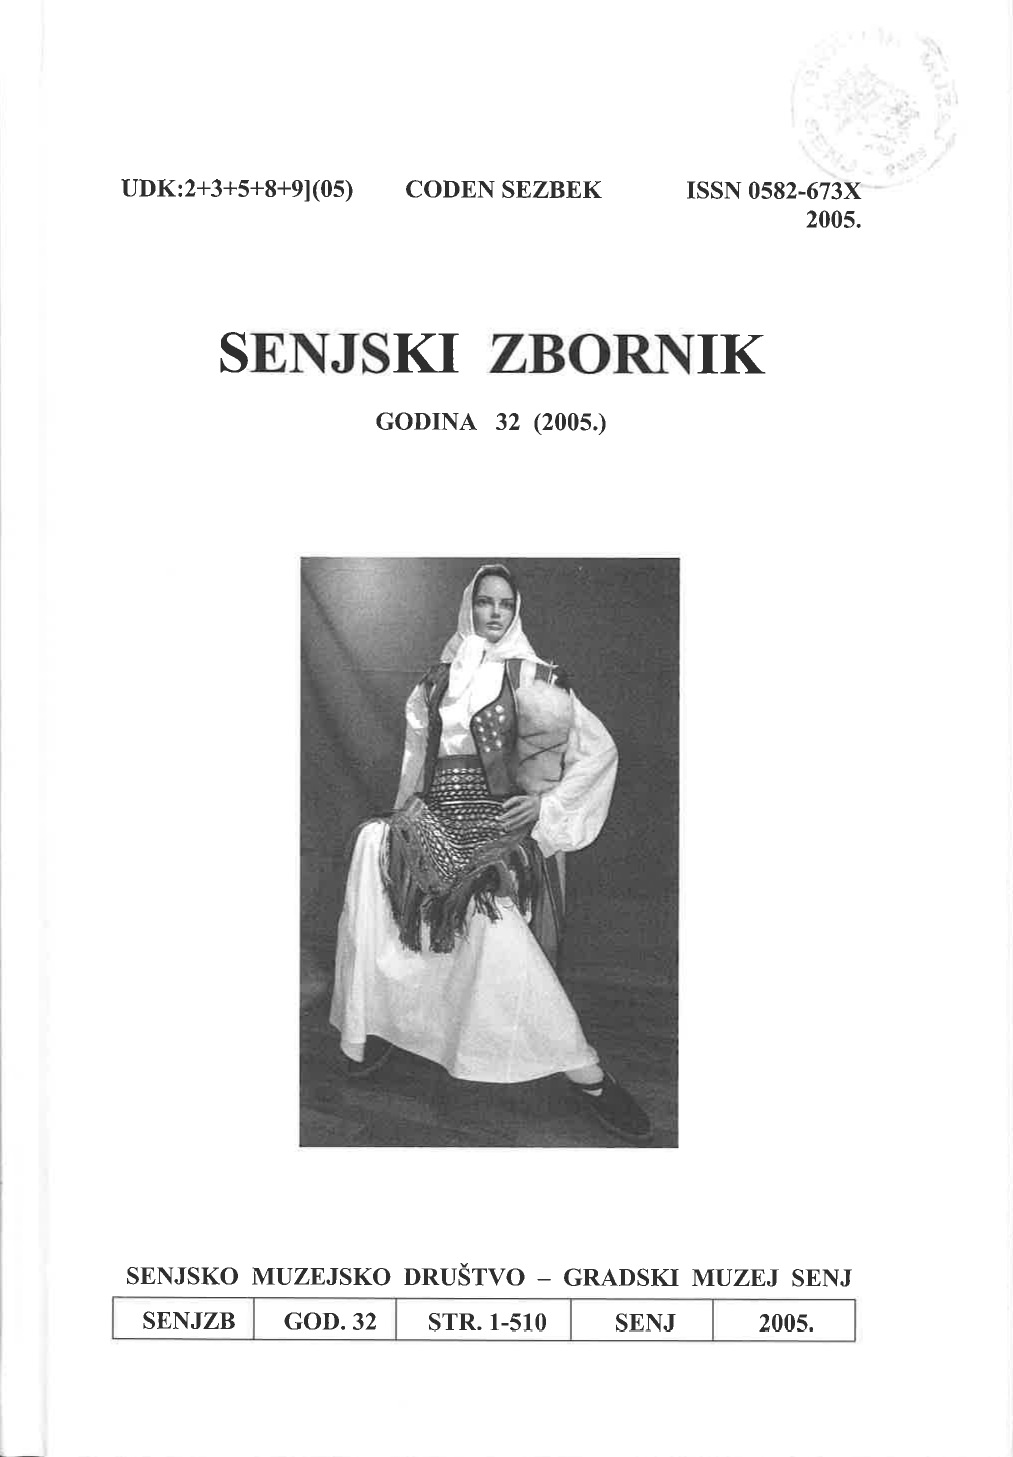 Križari na gospićkom području 1945. - 1950.